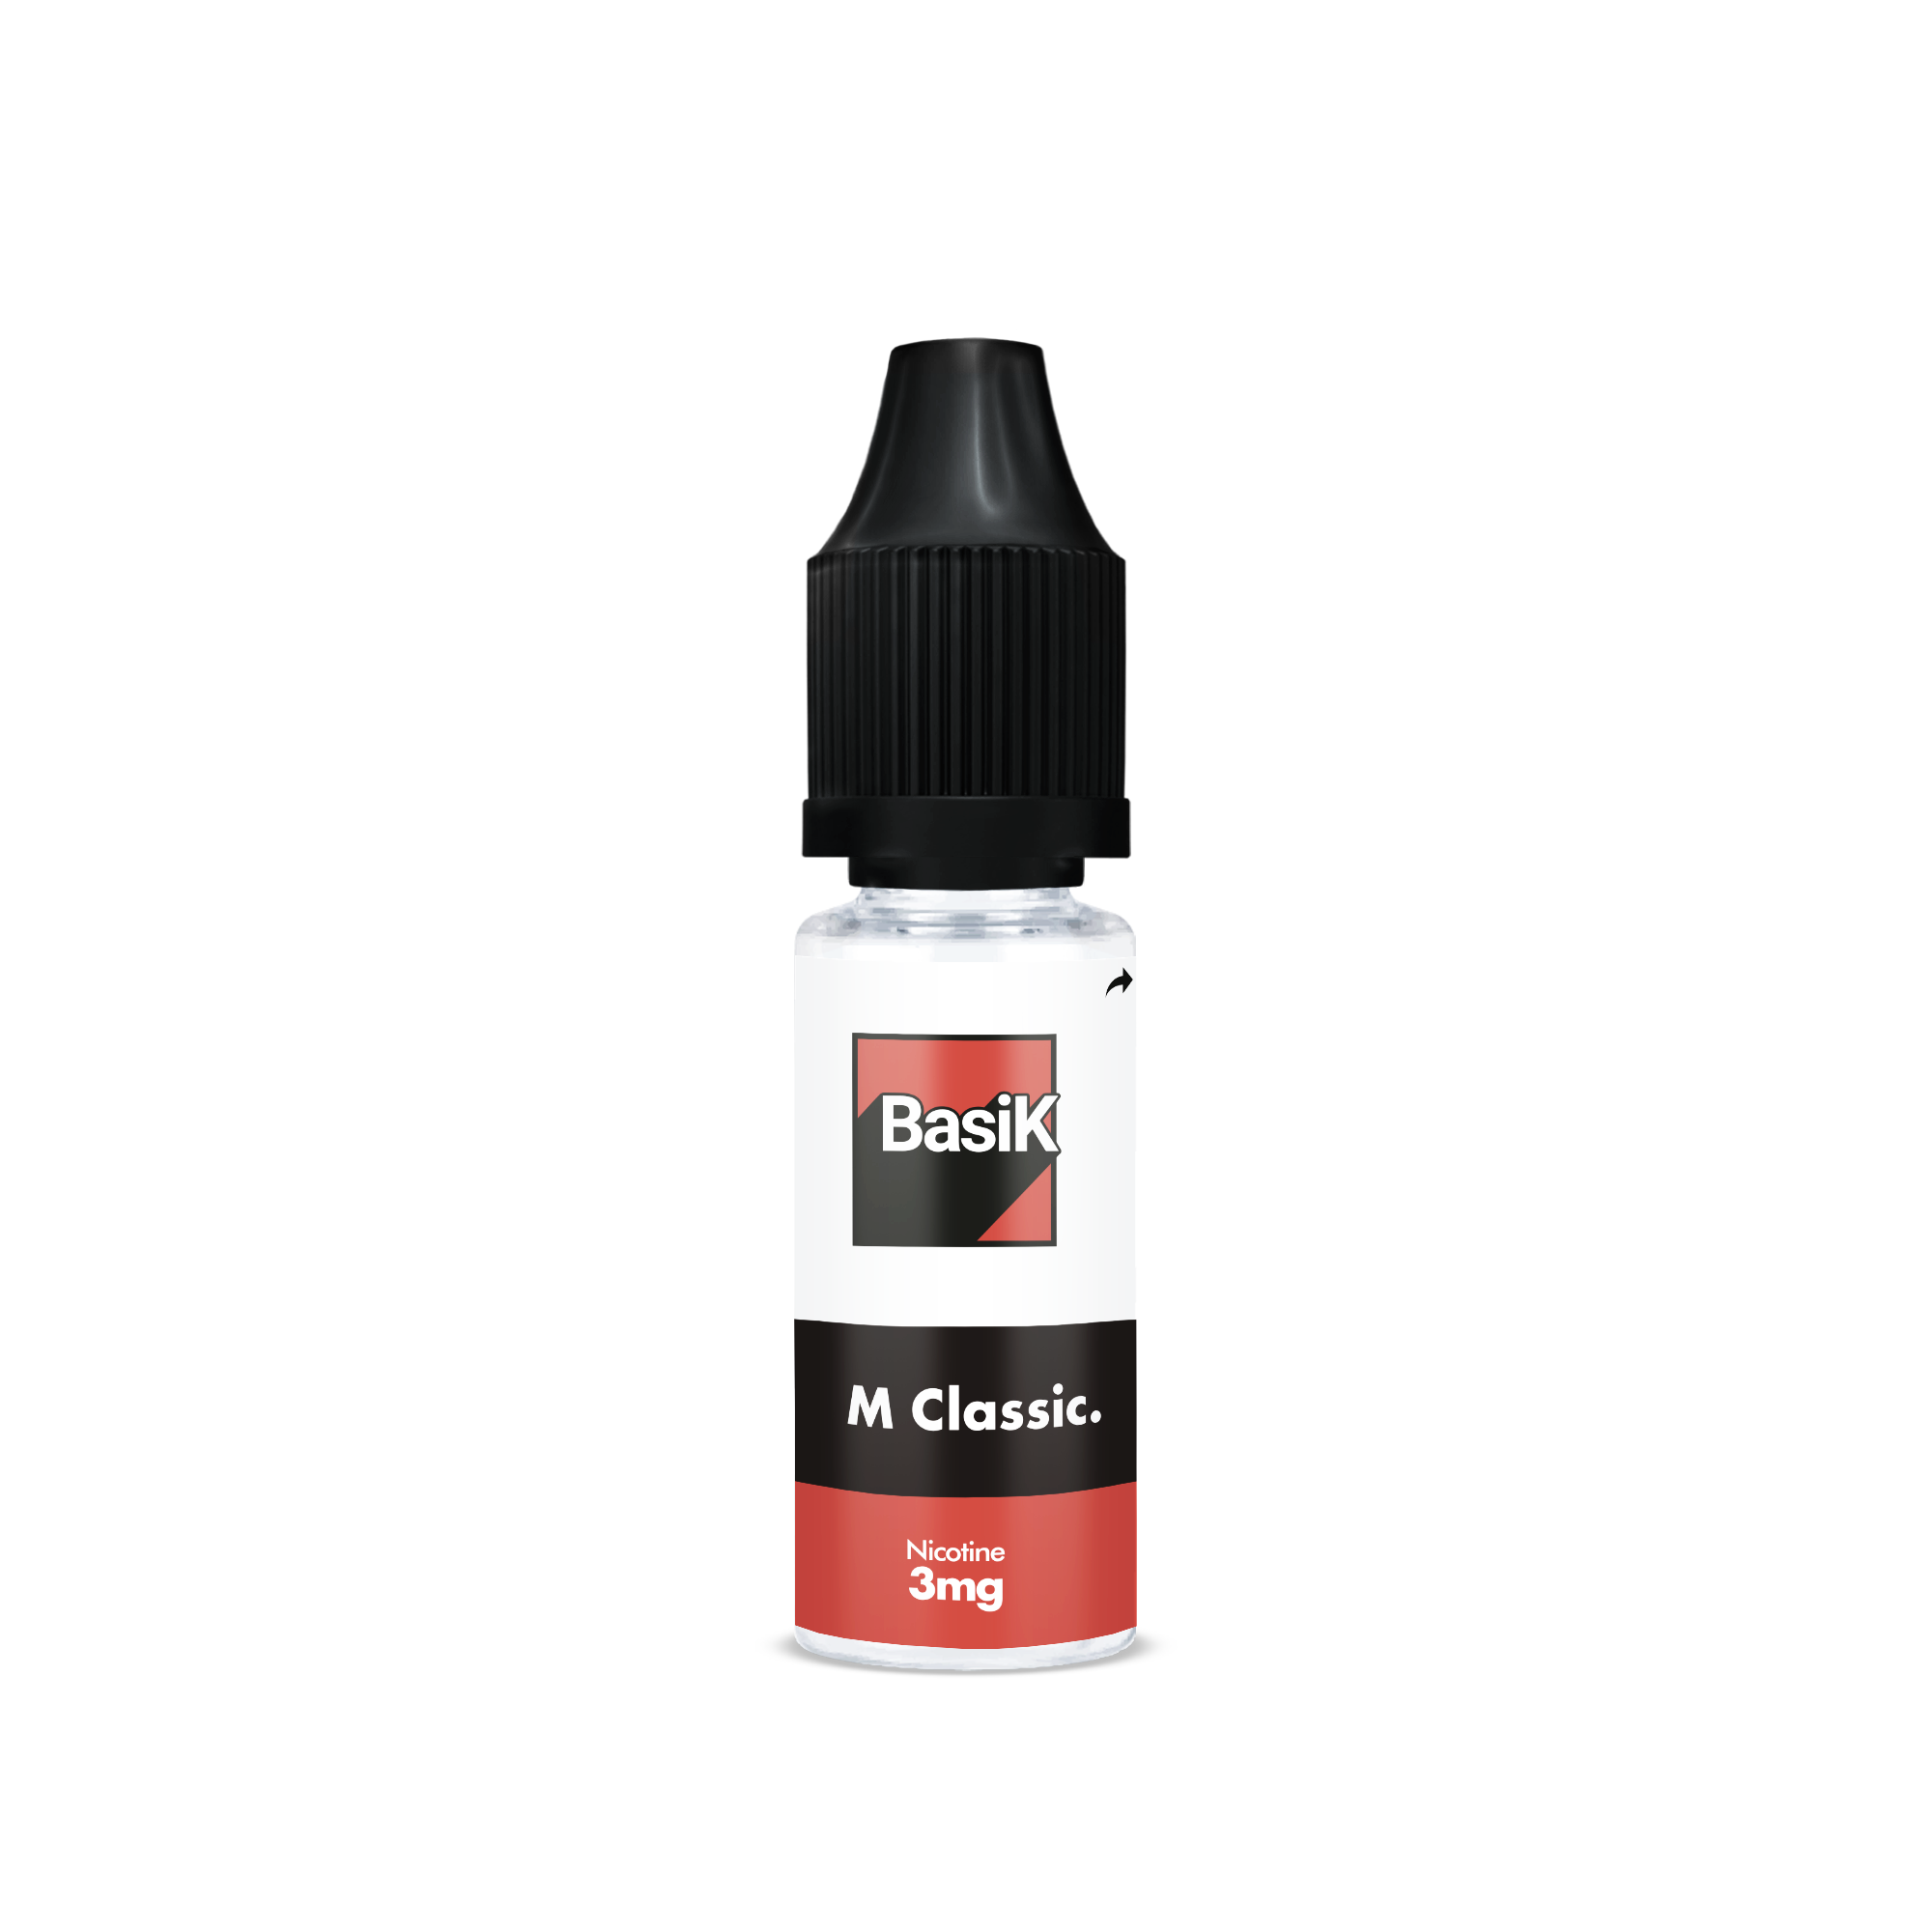 E-liquide M CLASSIC de la Gamme Basik en format 10ml nicotiné goût tabac léger en sels de nicotine